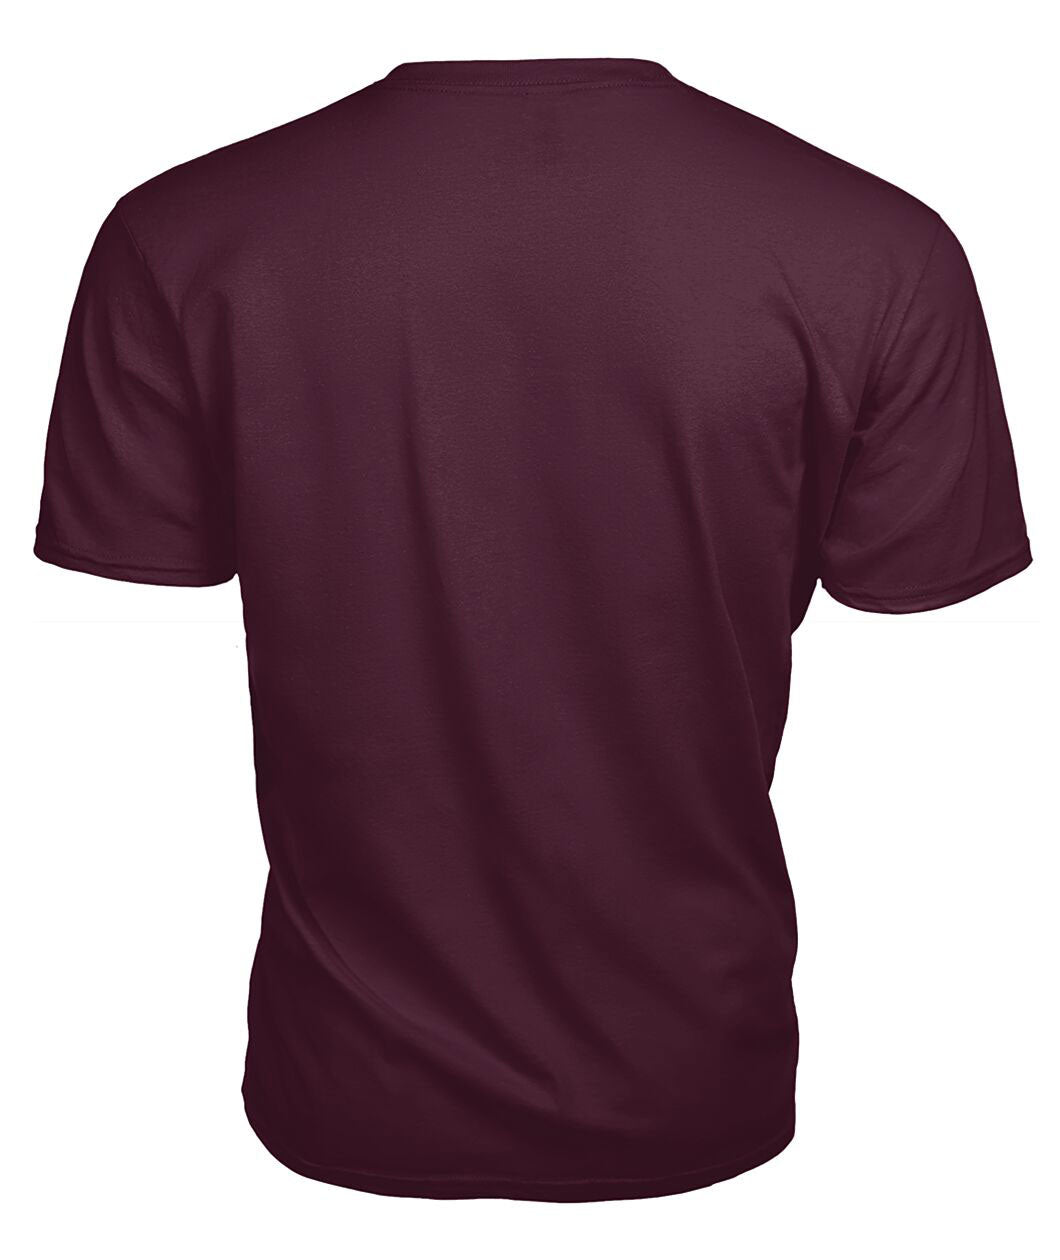 Callander Tartan Crest 2D T-shirt - Blood Runs Through My Veins Style